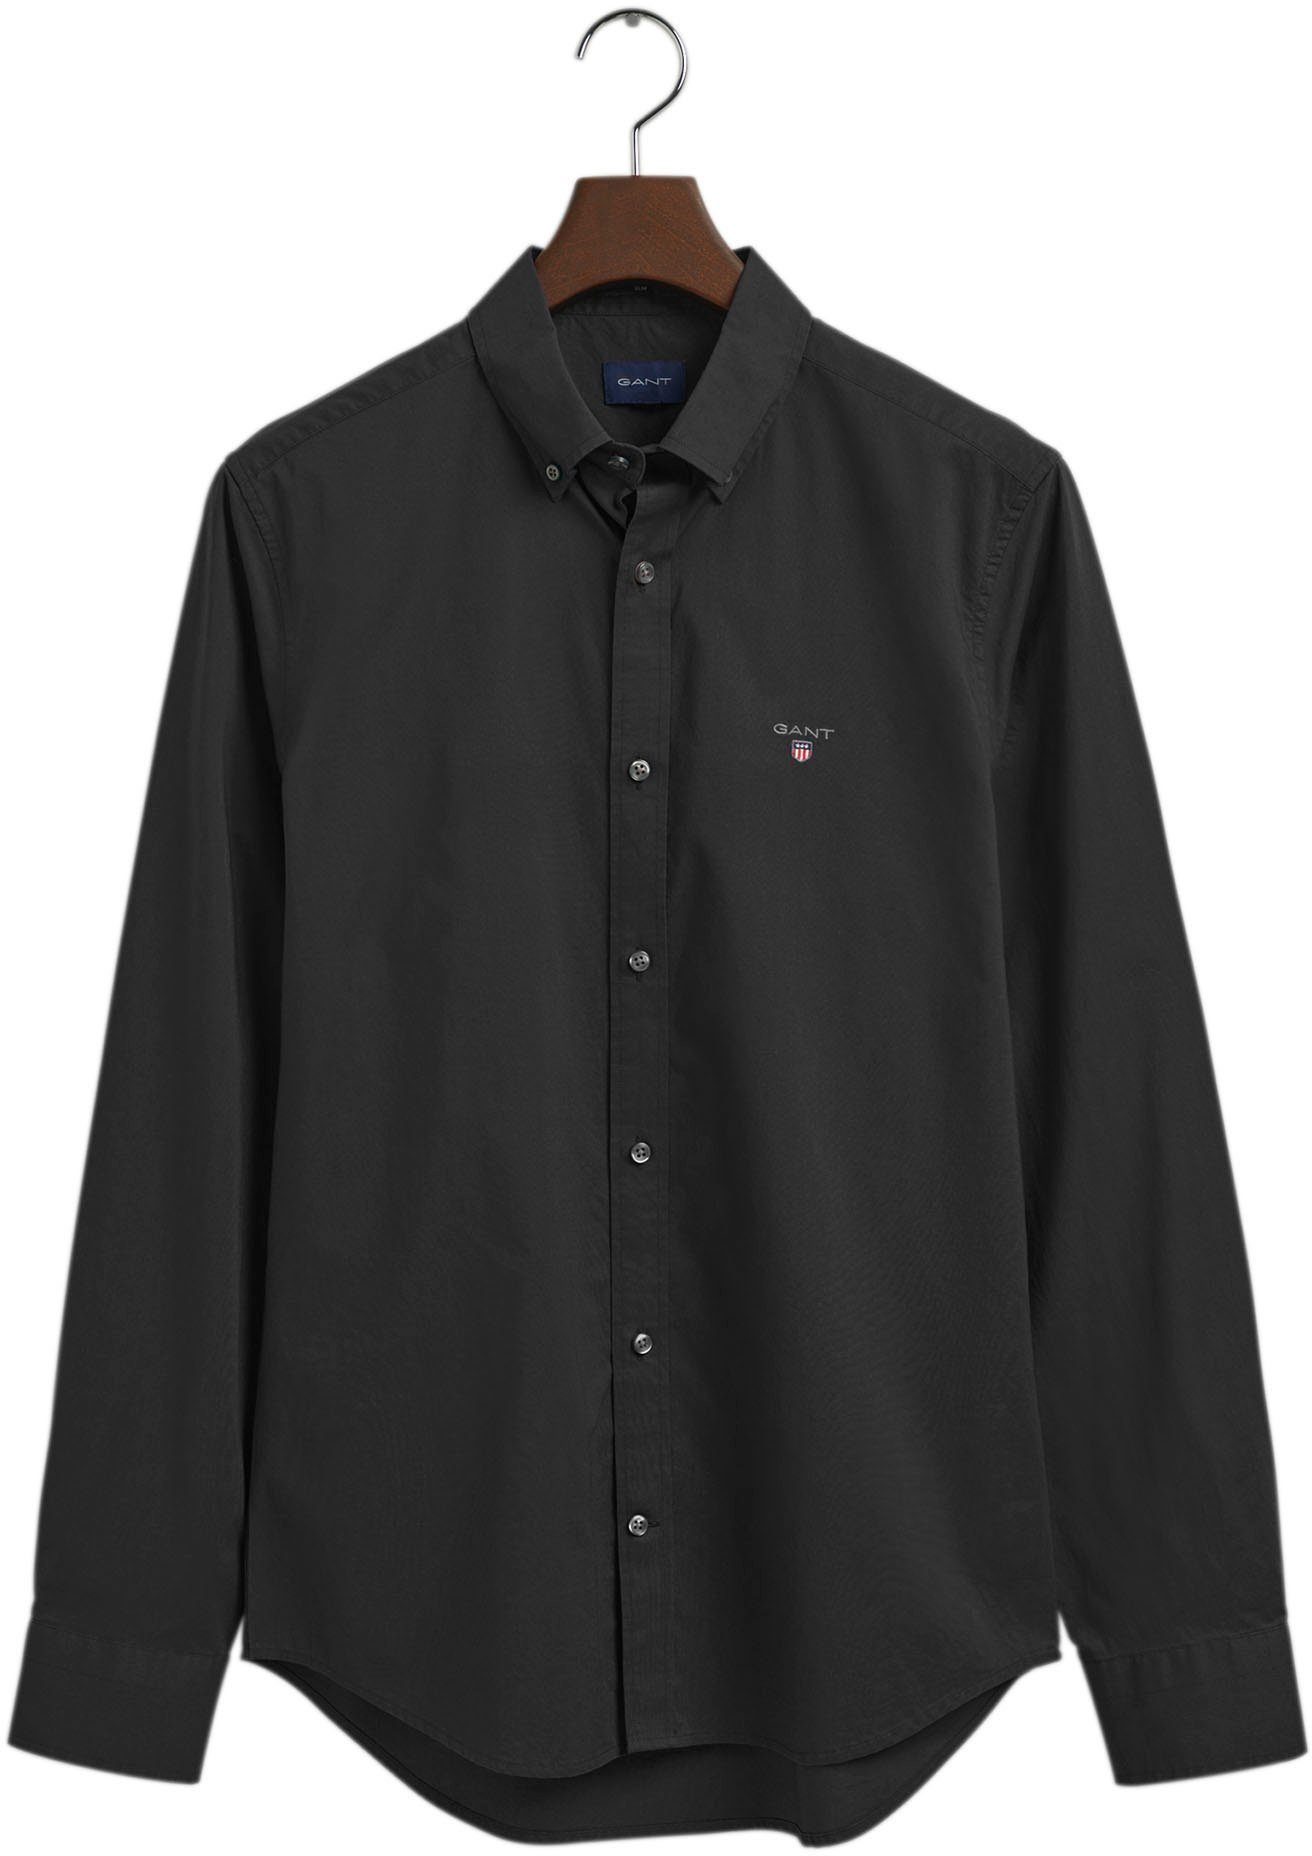 BD einer mit black BROADCLOTH Kent-Kragen und SLIM Design klassisches Brusttasche Businesshemd Gant